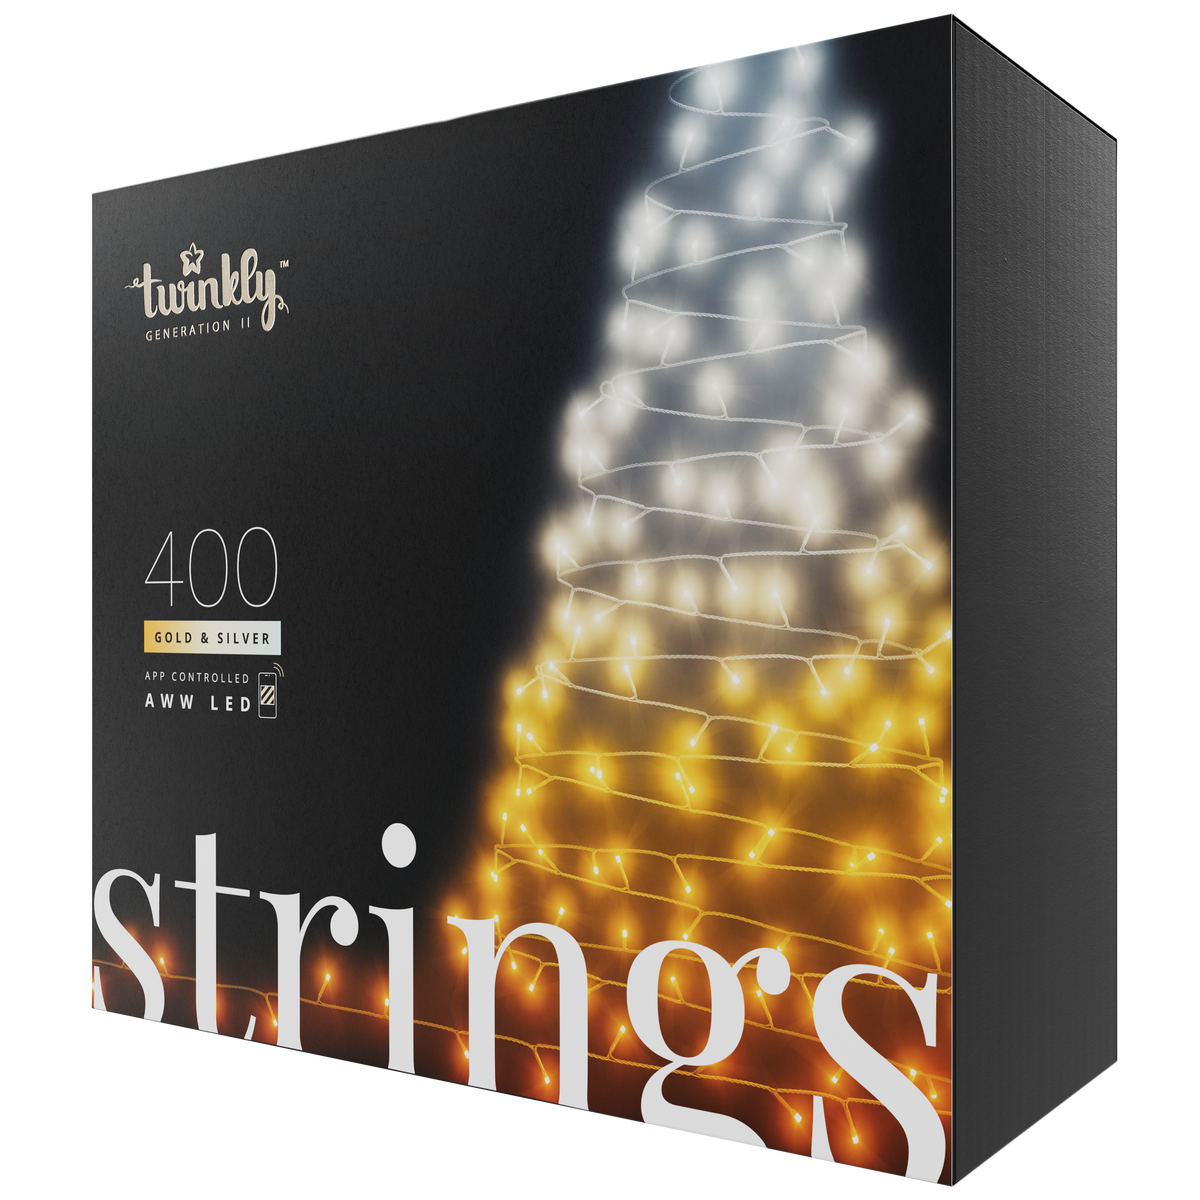 Strings (zlatá a strieborná edícia)